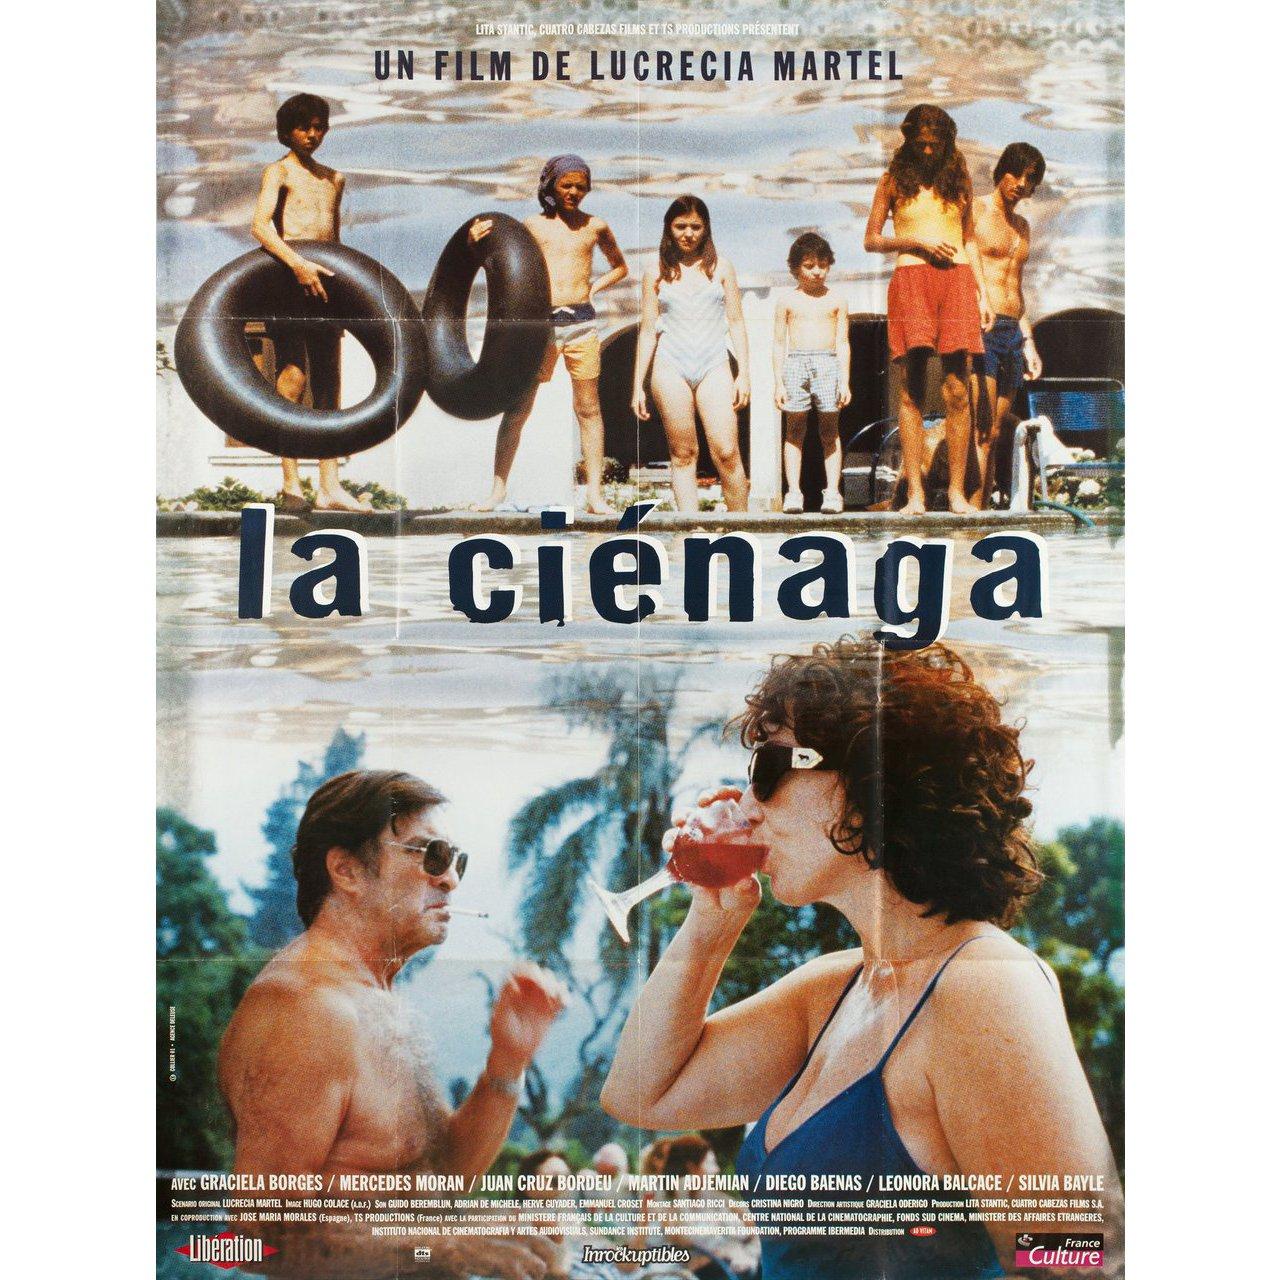 Grande affiche originale française de 2001 pour le film La Cienaga réalisé par Lucrecia Martel avec Mercedes Moran / Graciela Borges / Martin Adjemian / Leonora Balcarce. Très bon état, plié. De nombreuses affiches originales ont été publiées pliées